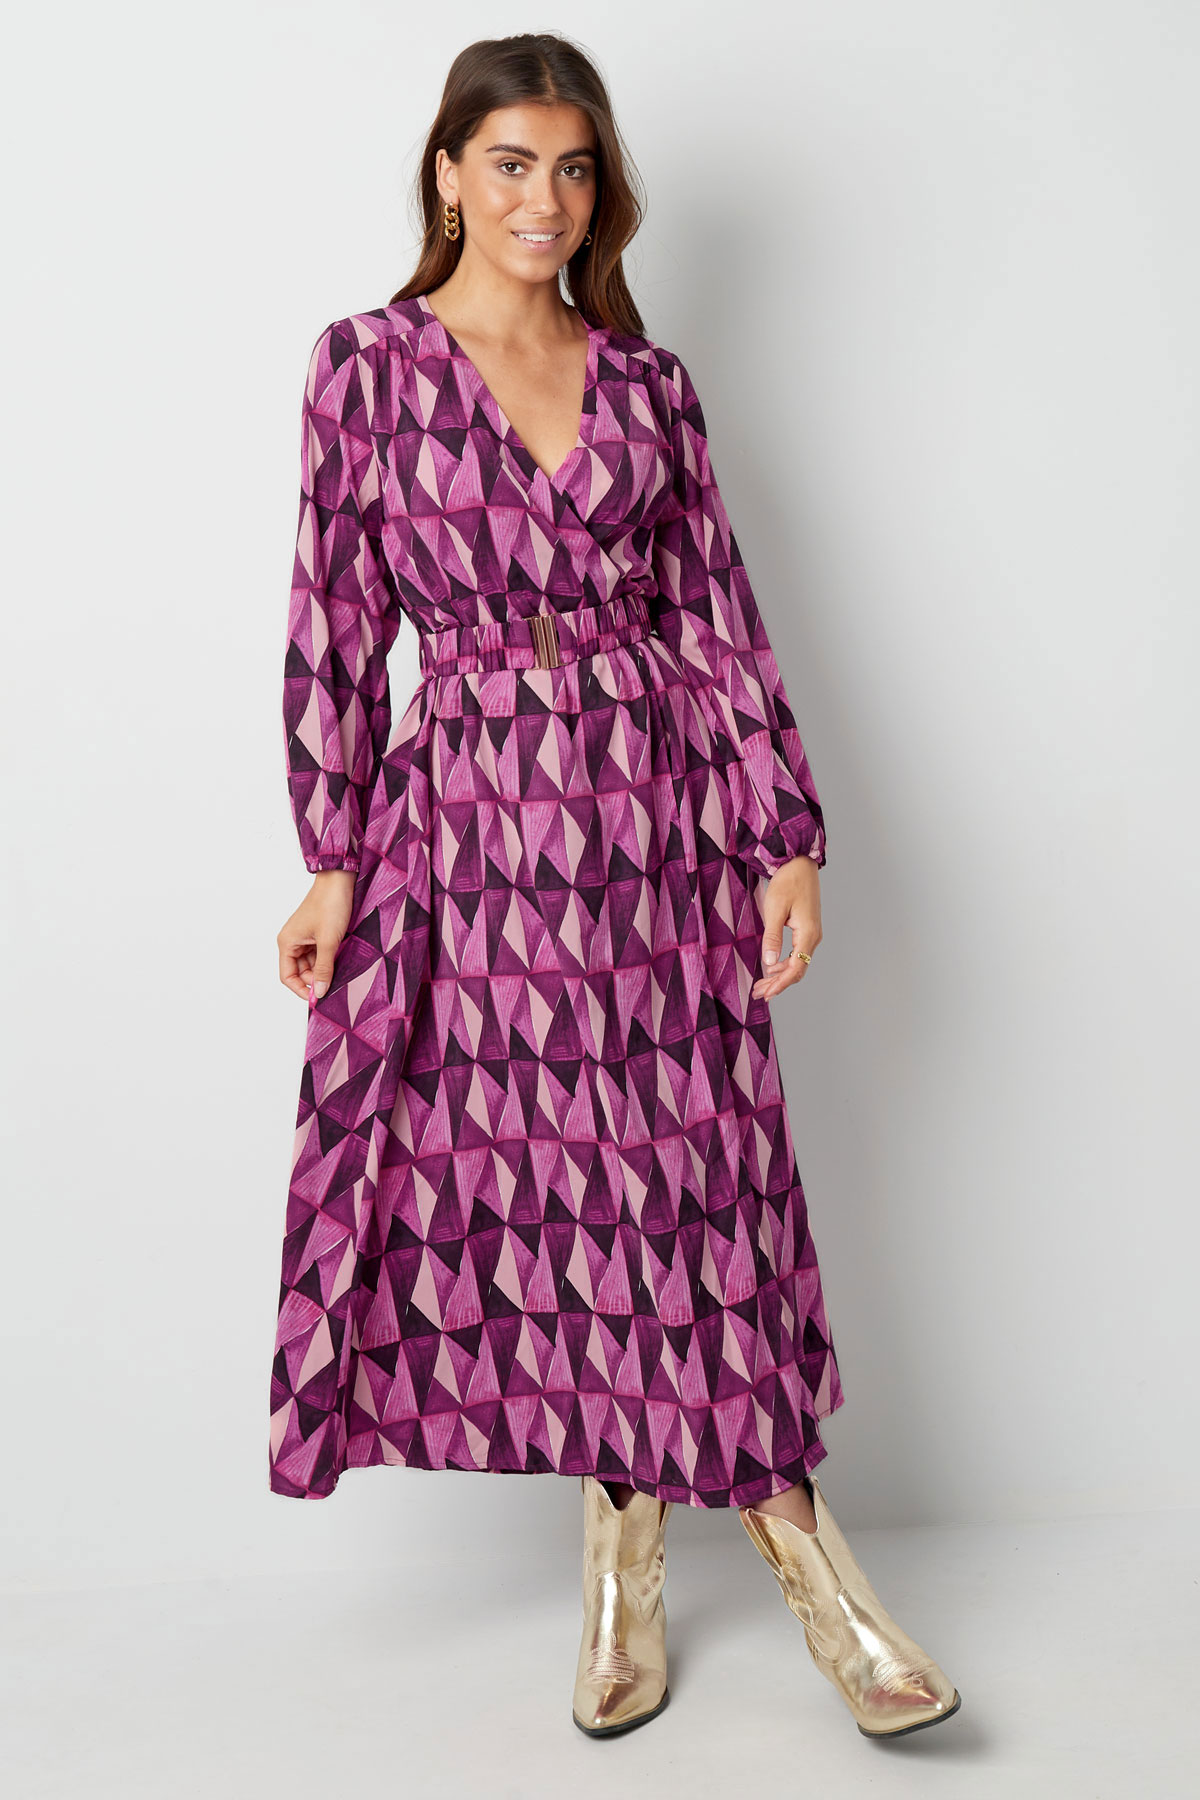 Robe longue imprimé rétro violet rose Image3